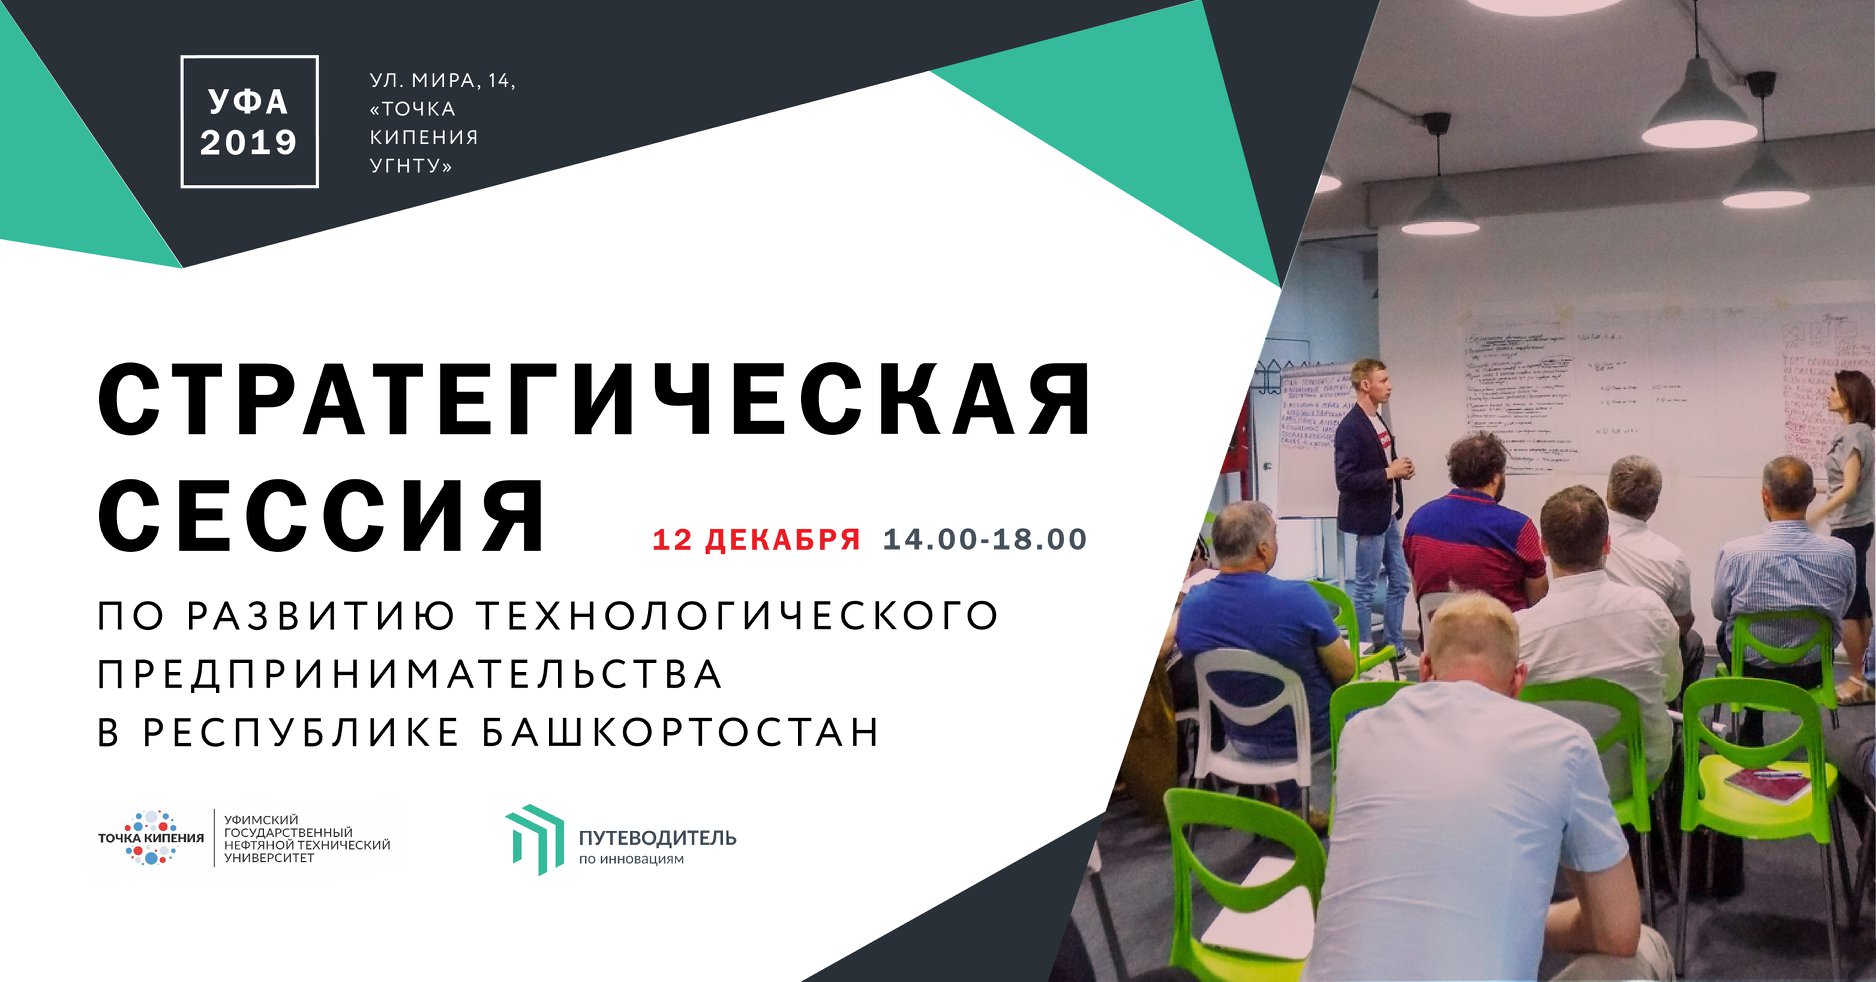 Стратегическая сессия по развитию технологического предпринимательства в Республике Башкортостан